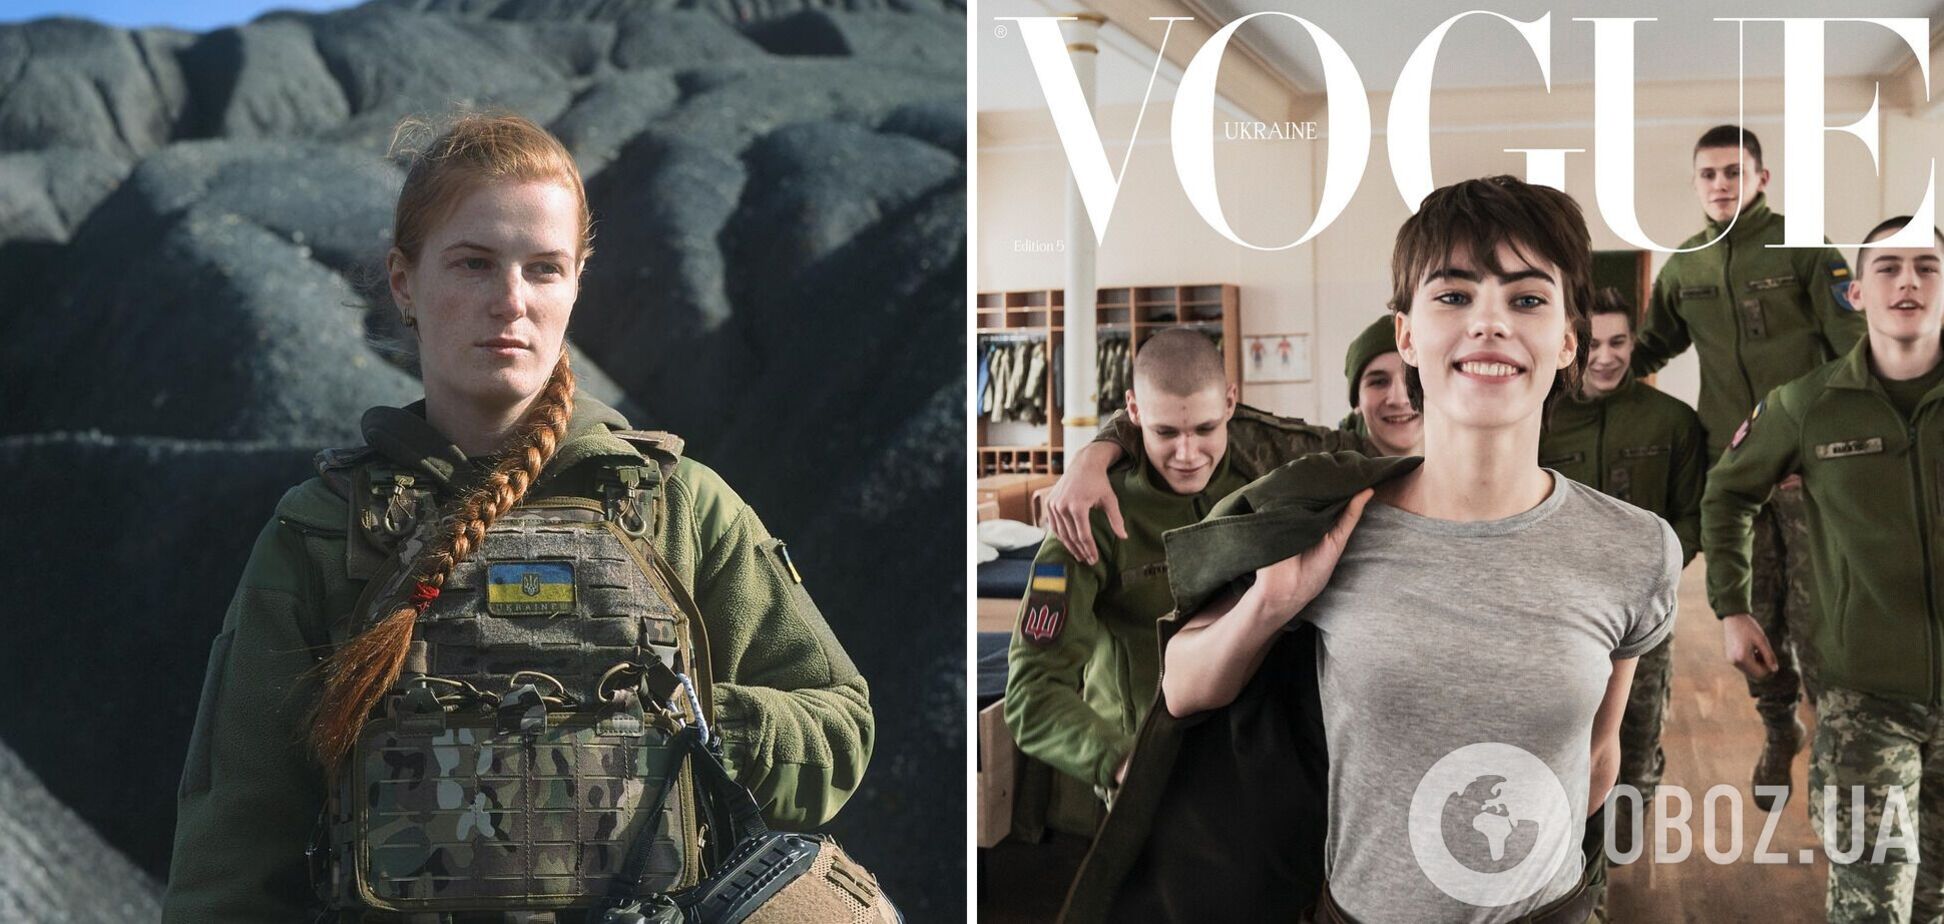 Принцесса-воин Оксана 'Ксена' Рубаняк и модель Карина Мазяр в стенах военного лицея украсили обложки Vogue